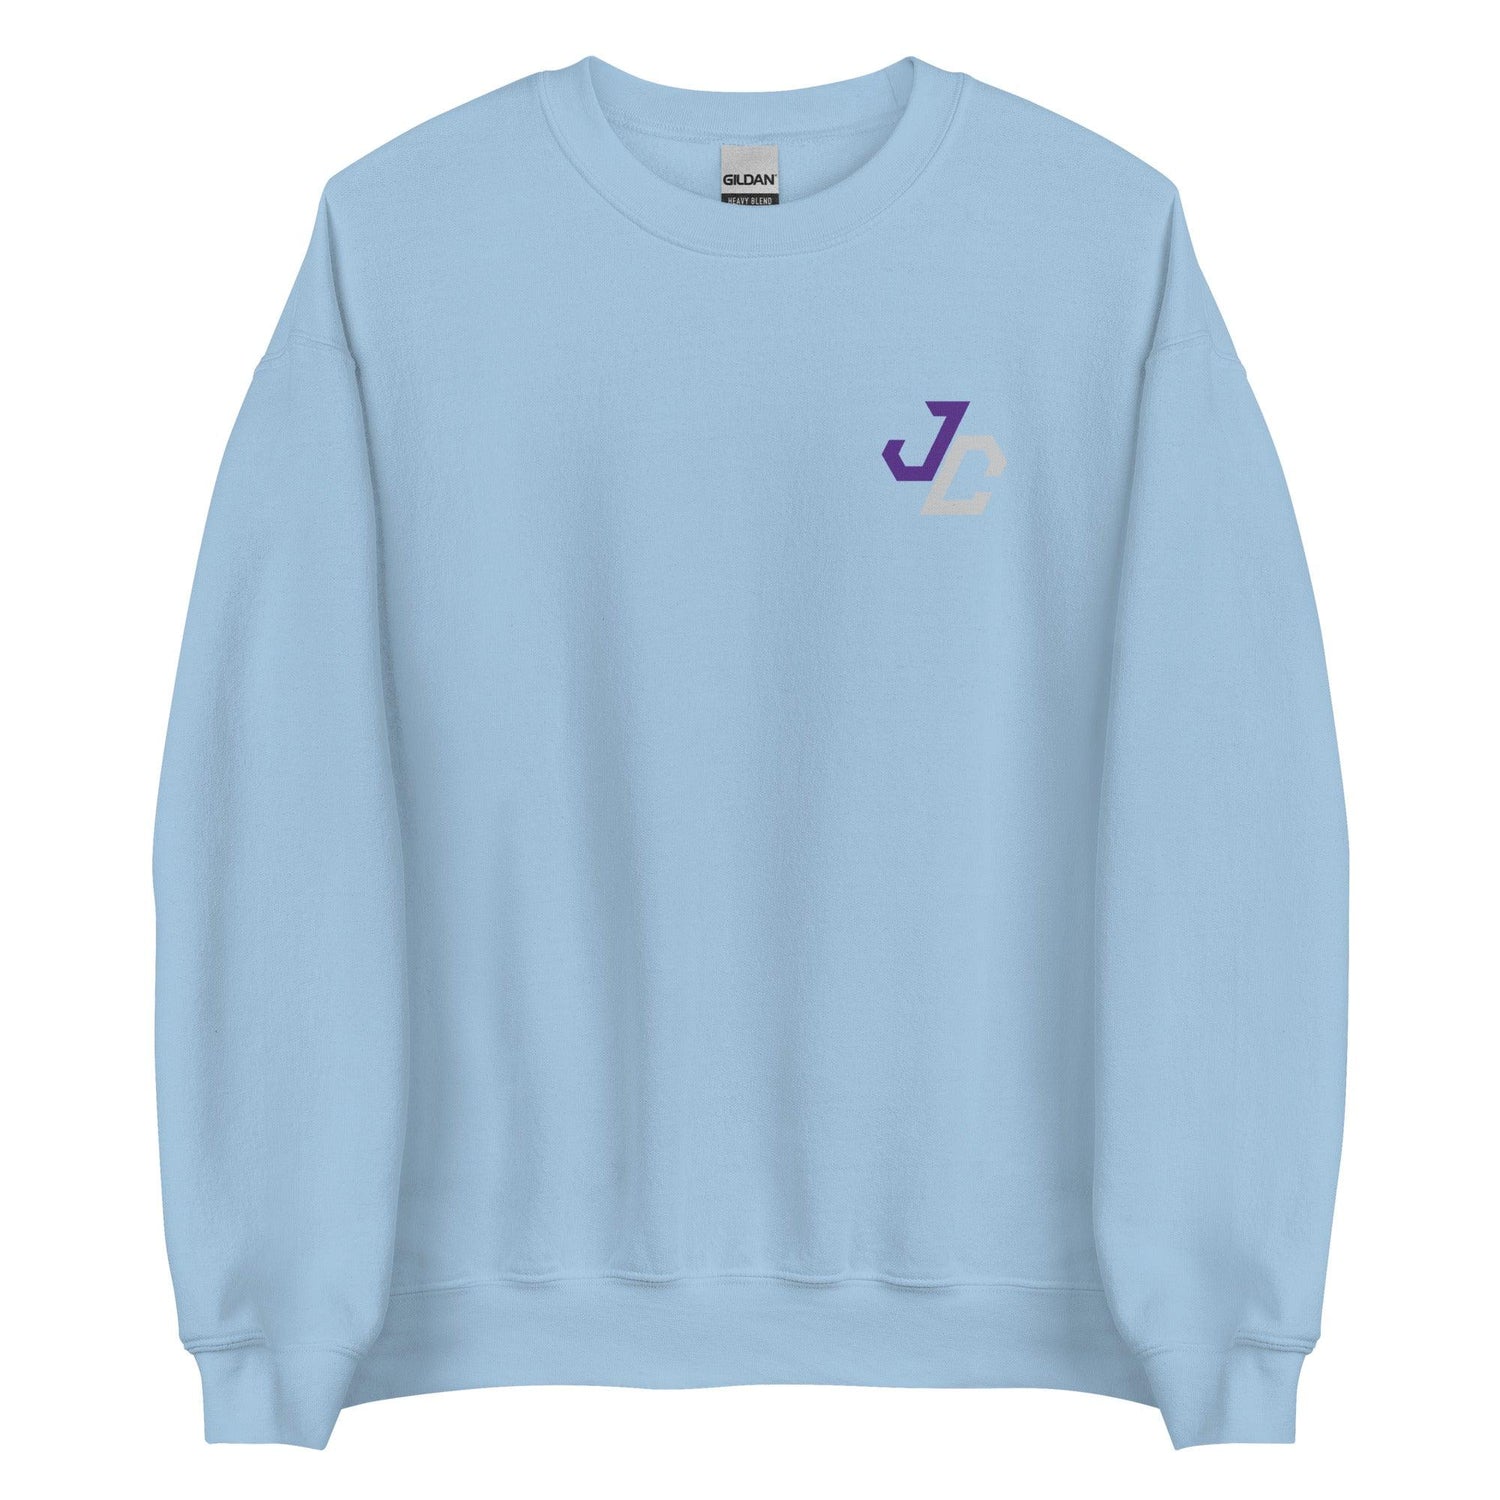 Jed Castles "Essential" Sweatshirt - Fan Arch